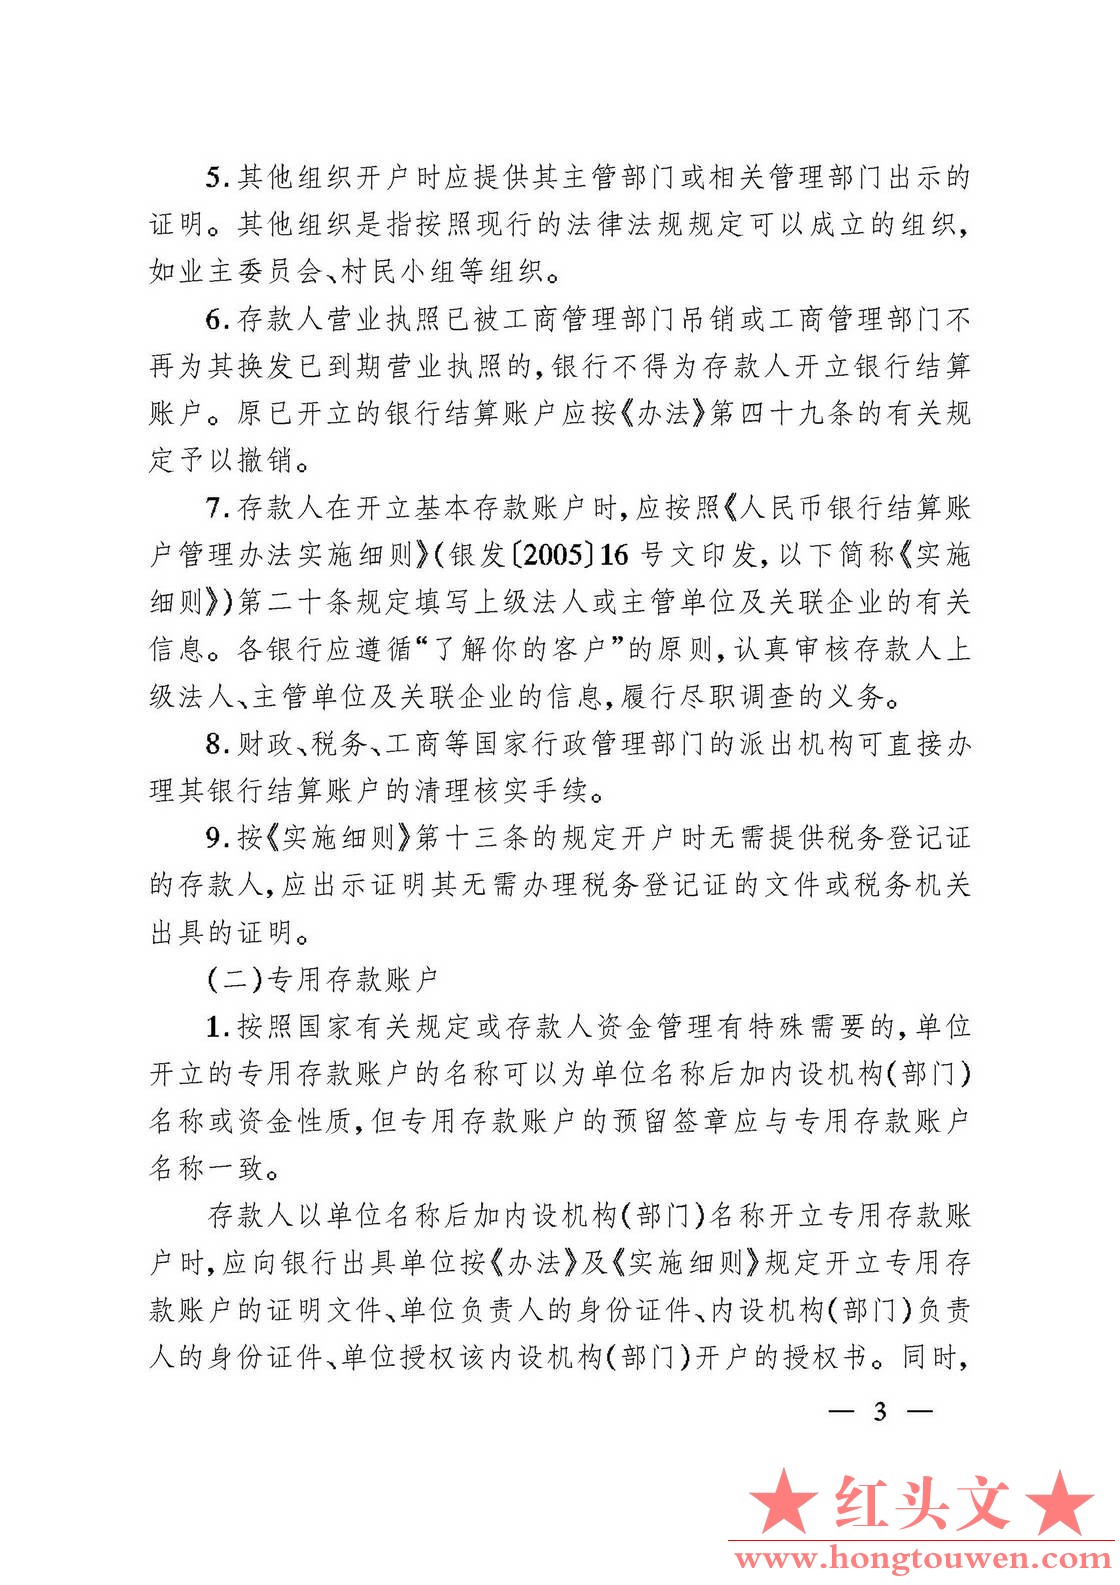 银发[2006]71号-中国人民银行关于规范人民币银行结算账户管理有关问题的通知_页面_03..jpg